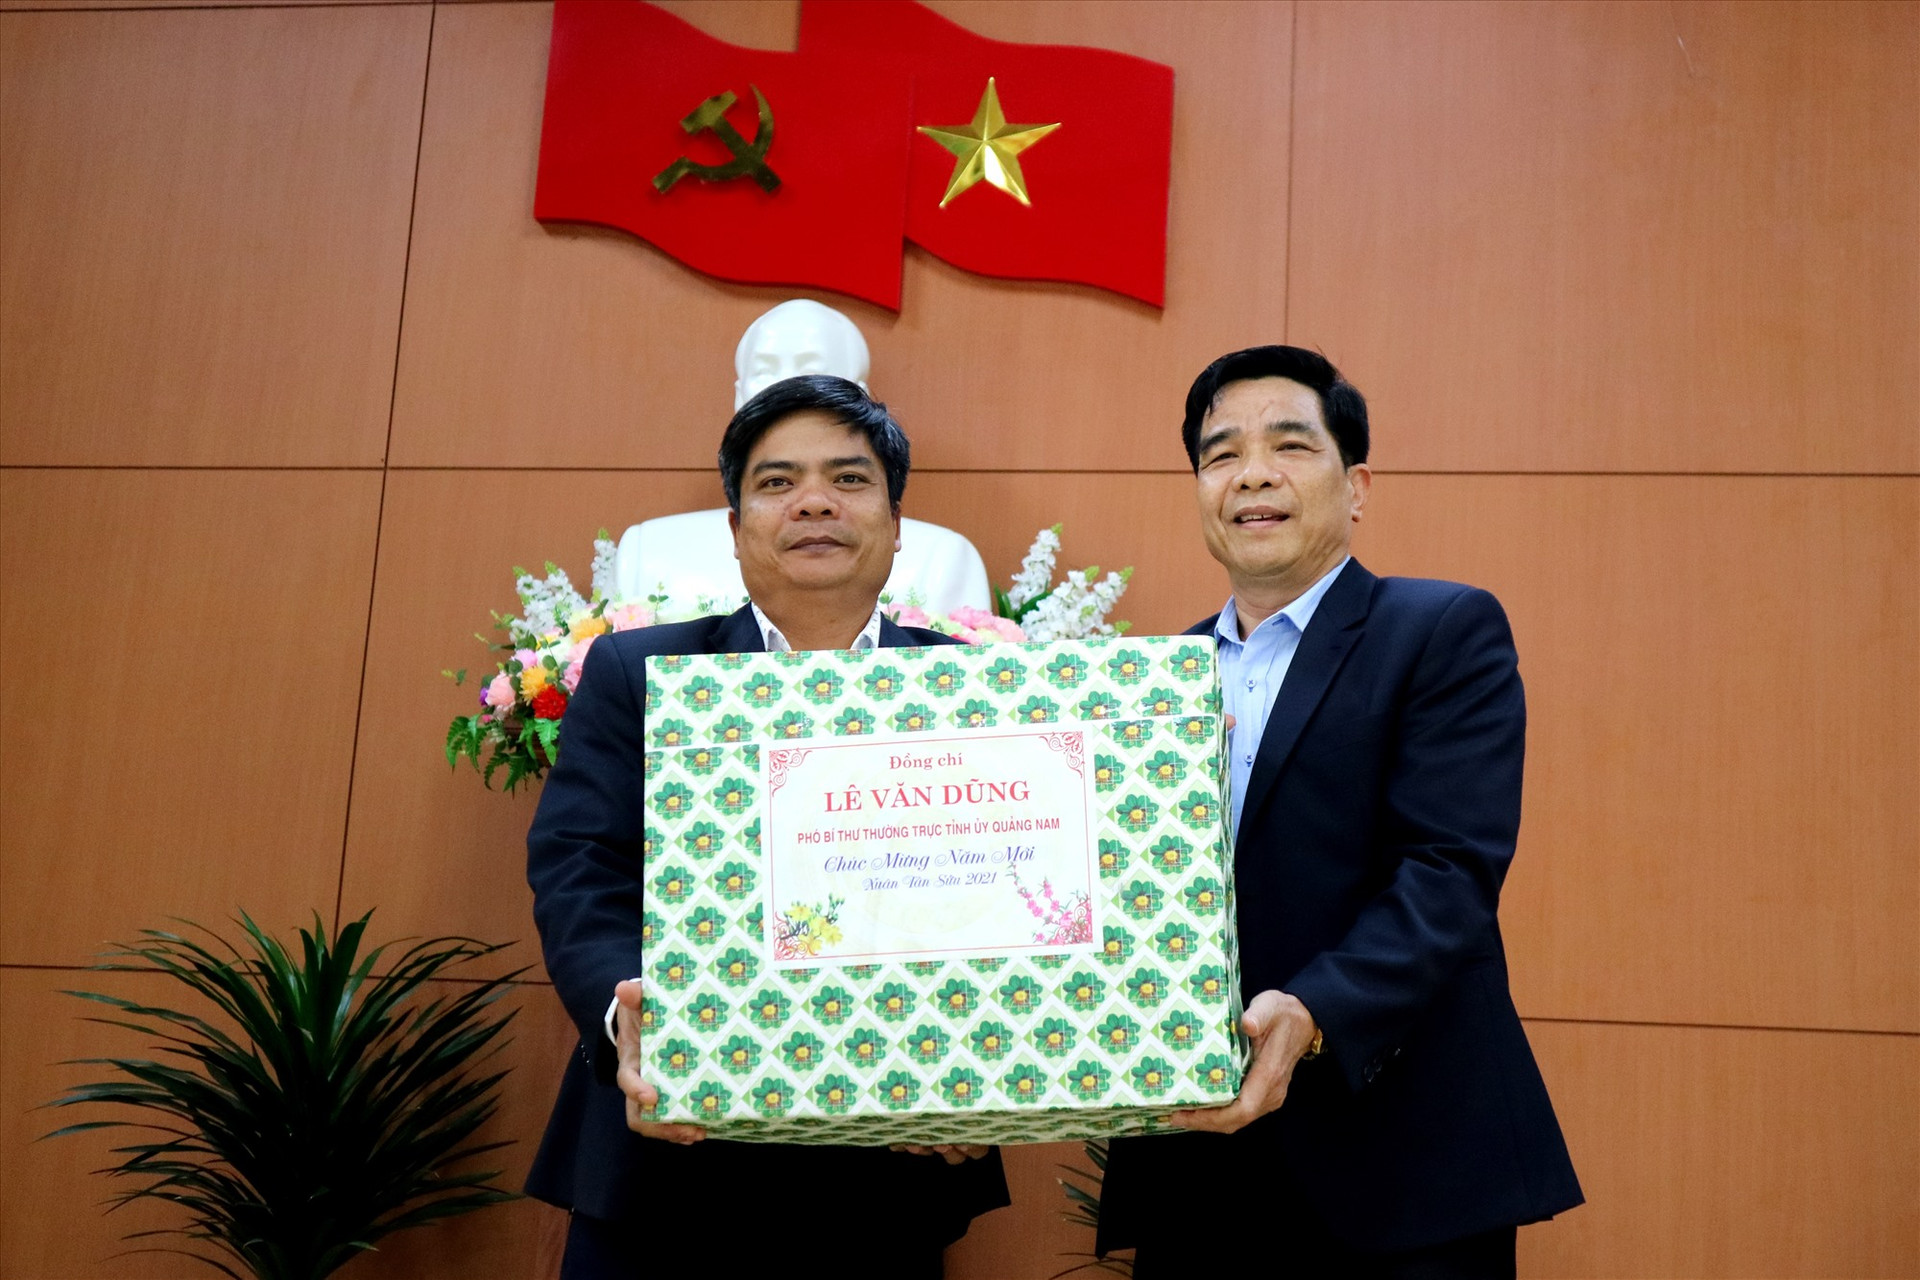 đại diện lãnh đạo huyện Phước Sơn nhận quà tặng từ Phó Bí thư Thường trực Tỉnh ủy Lê Văn Dũng. Ảnh: A.N